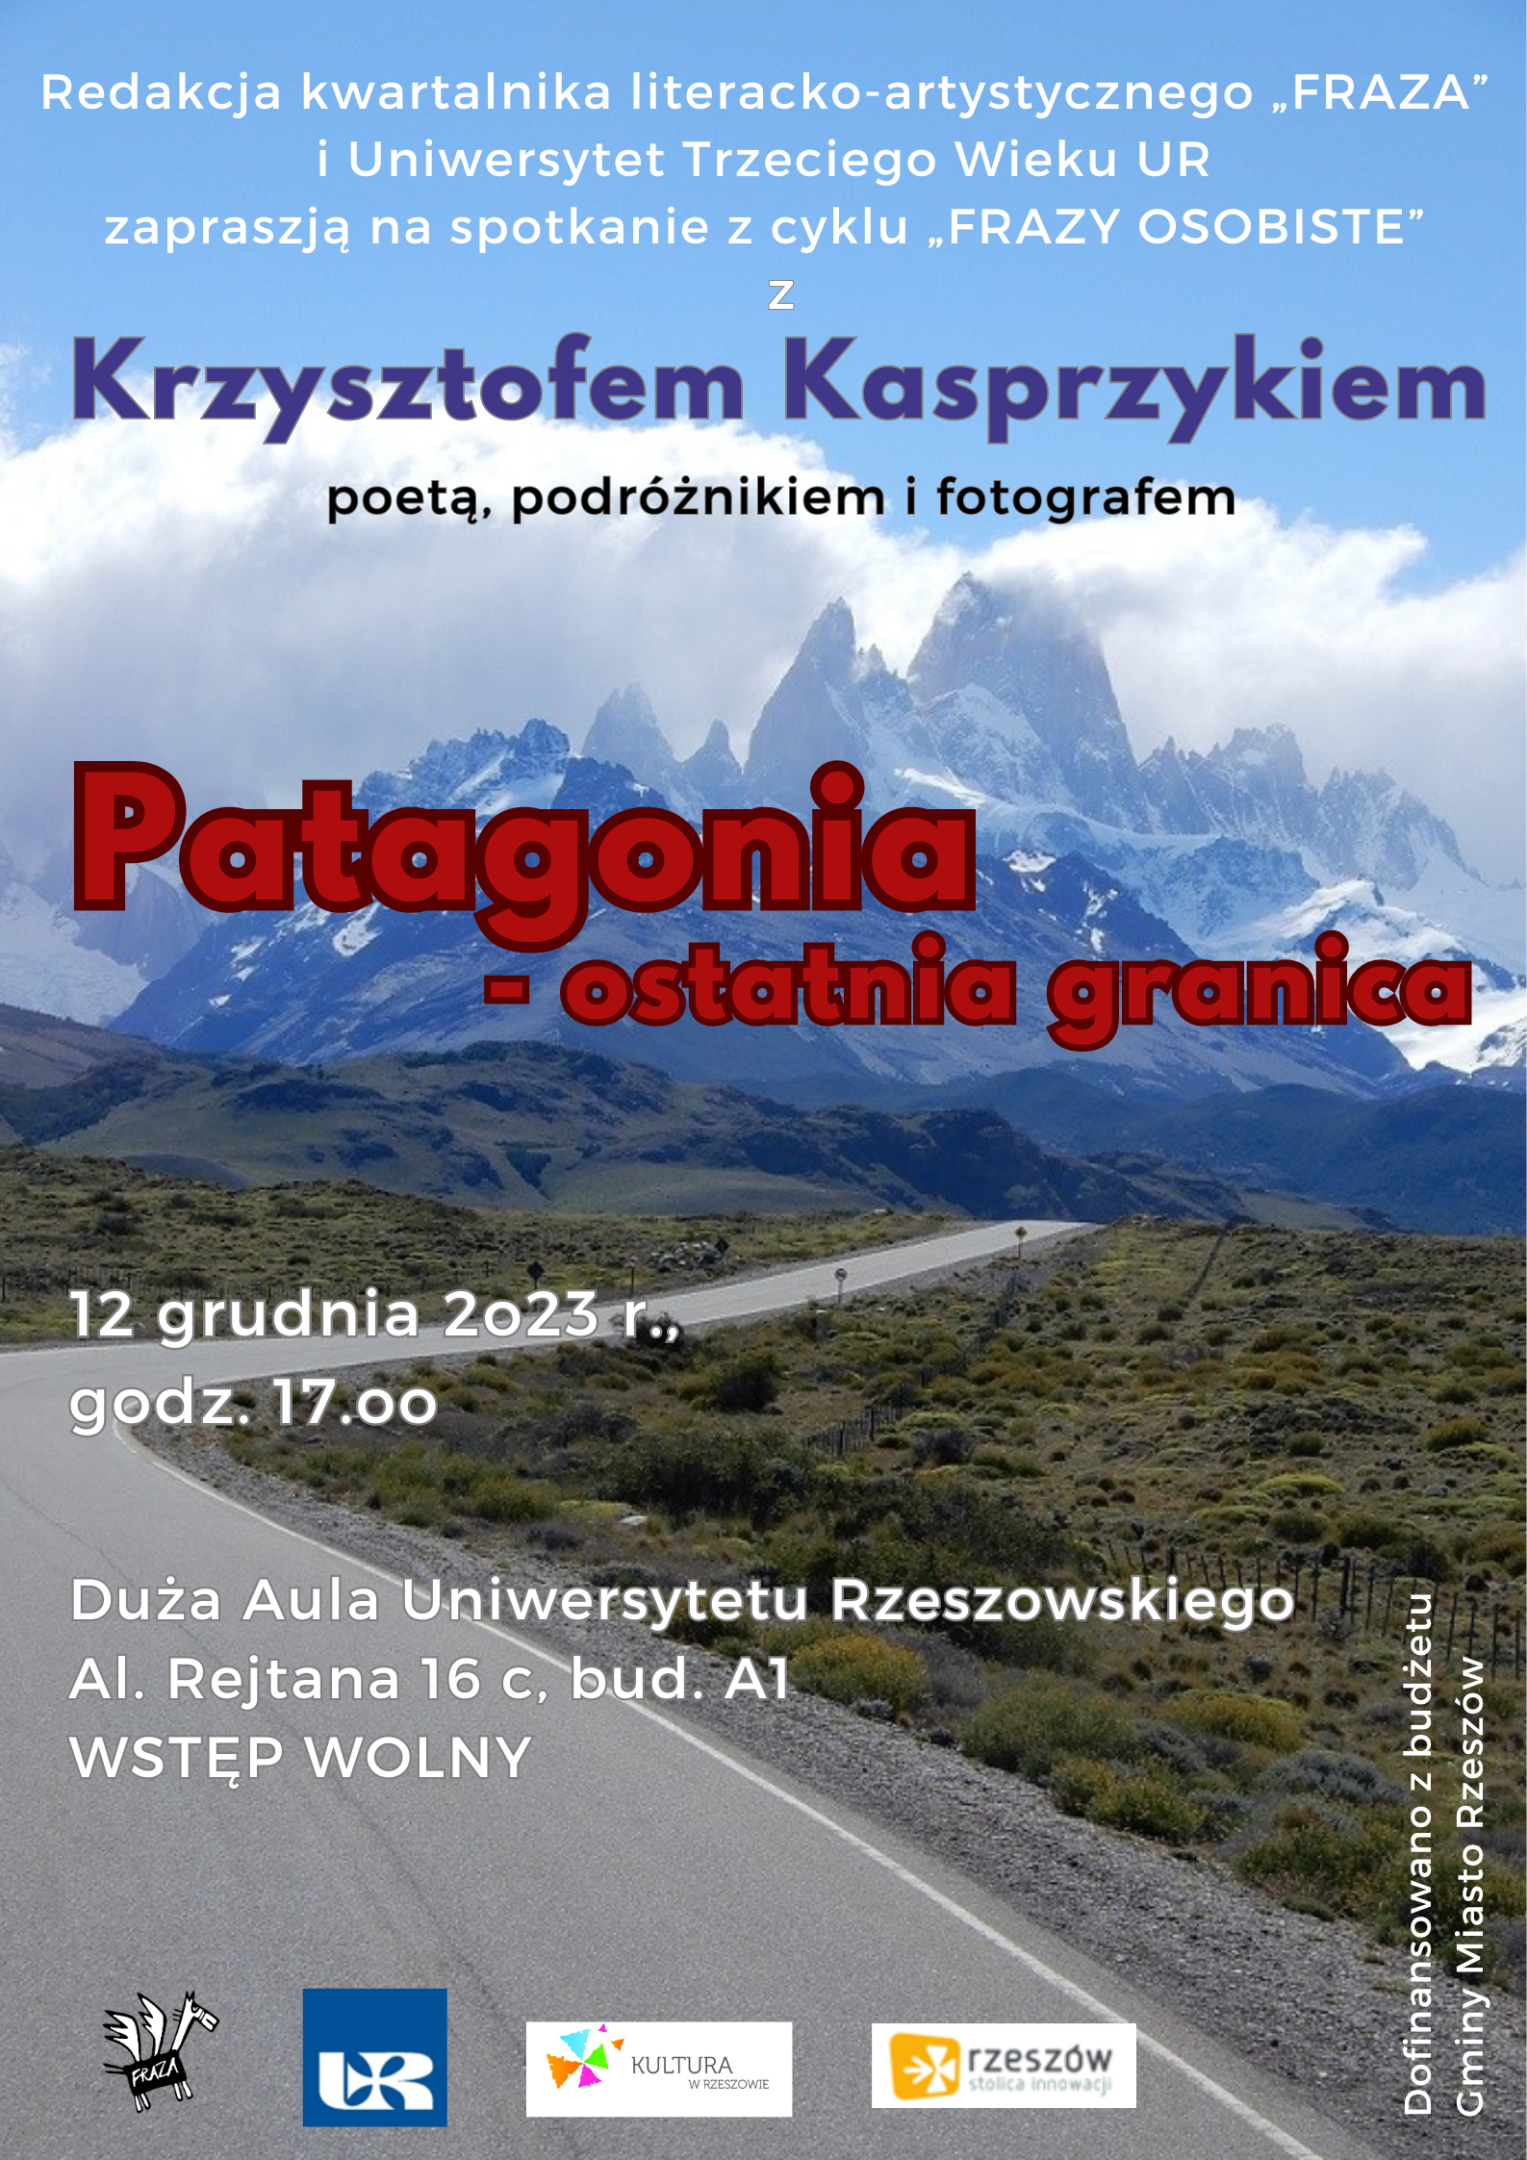 Plakata spotkania z Krzysztofem Kasprzykiem